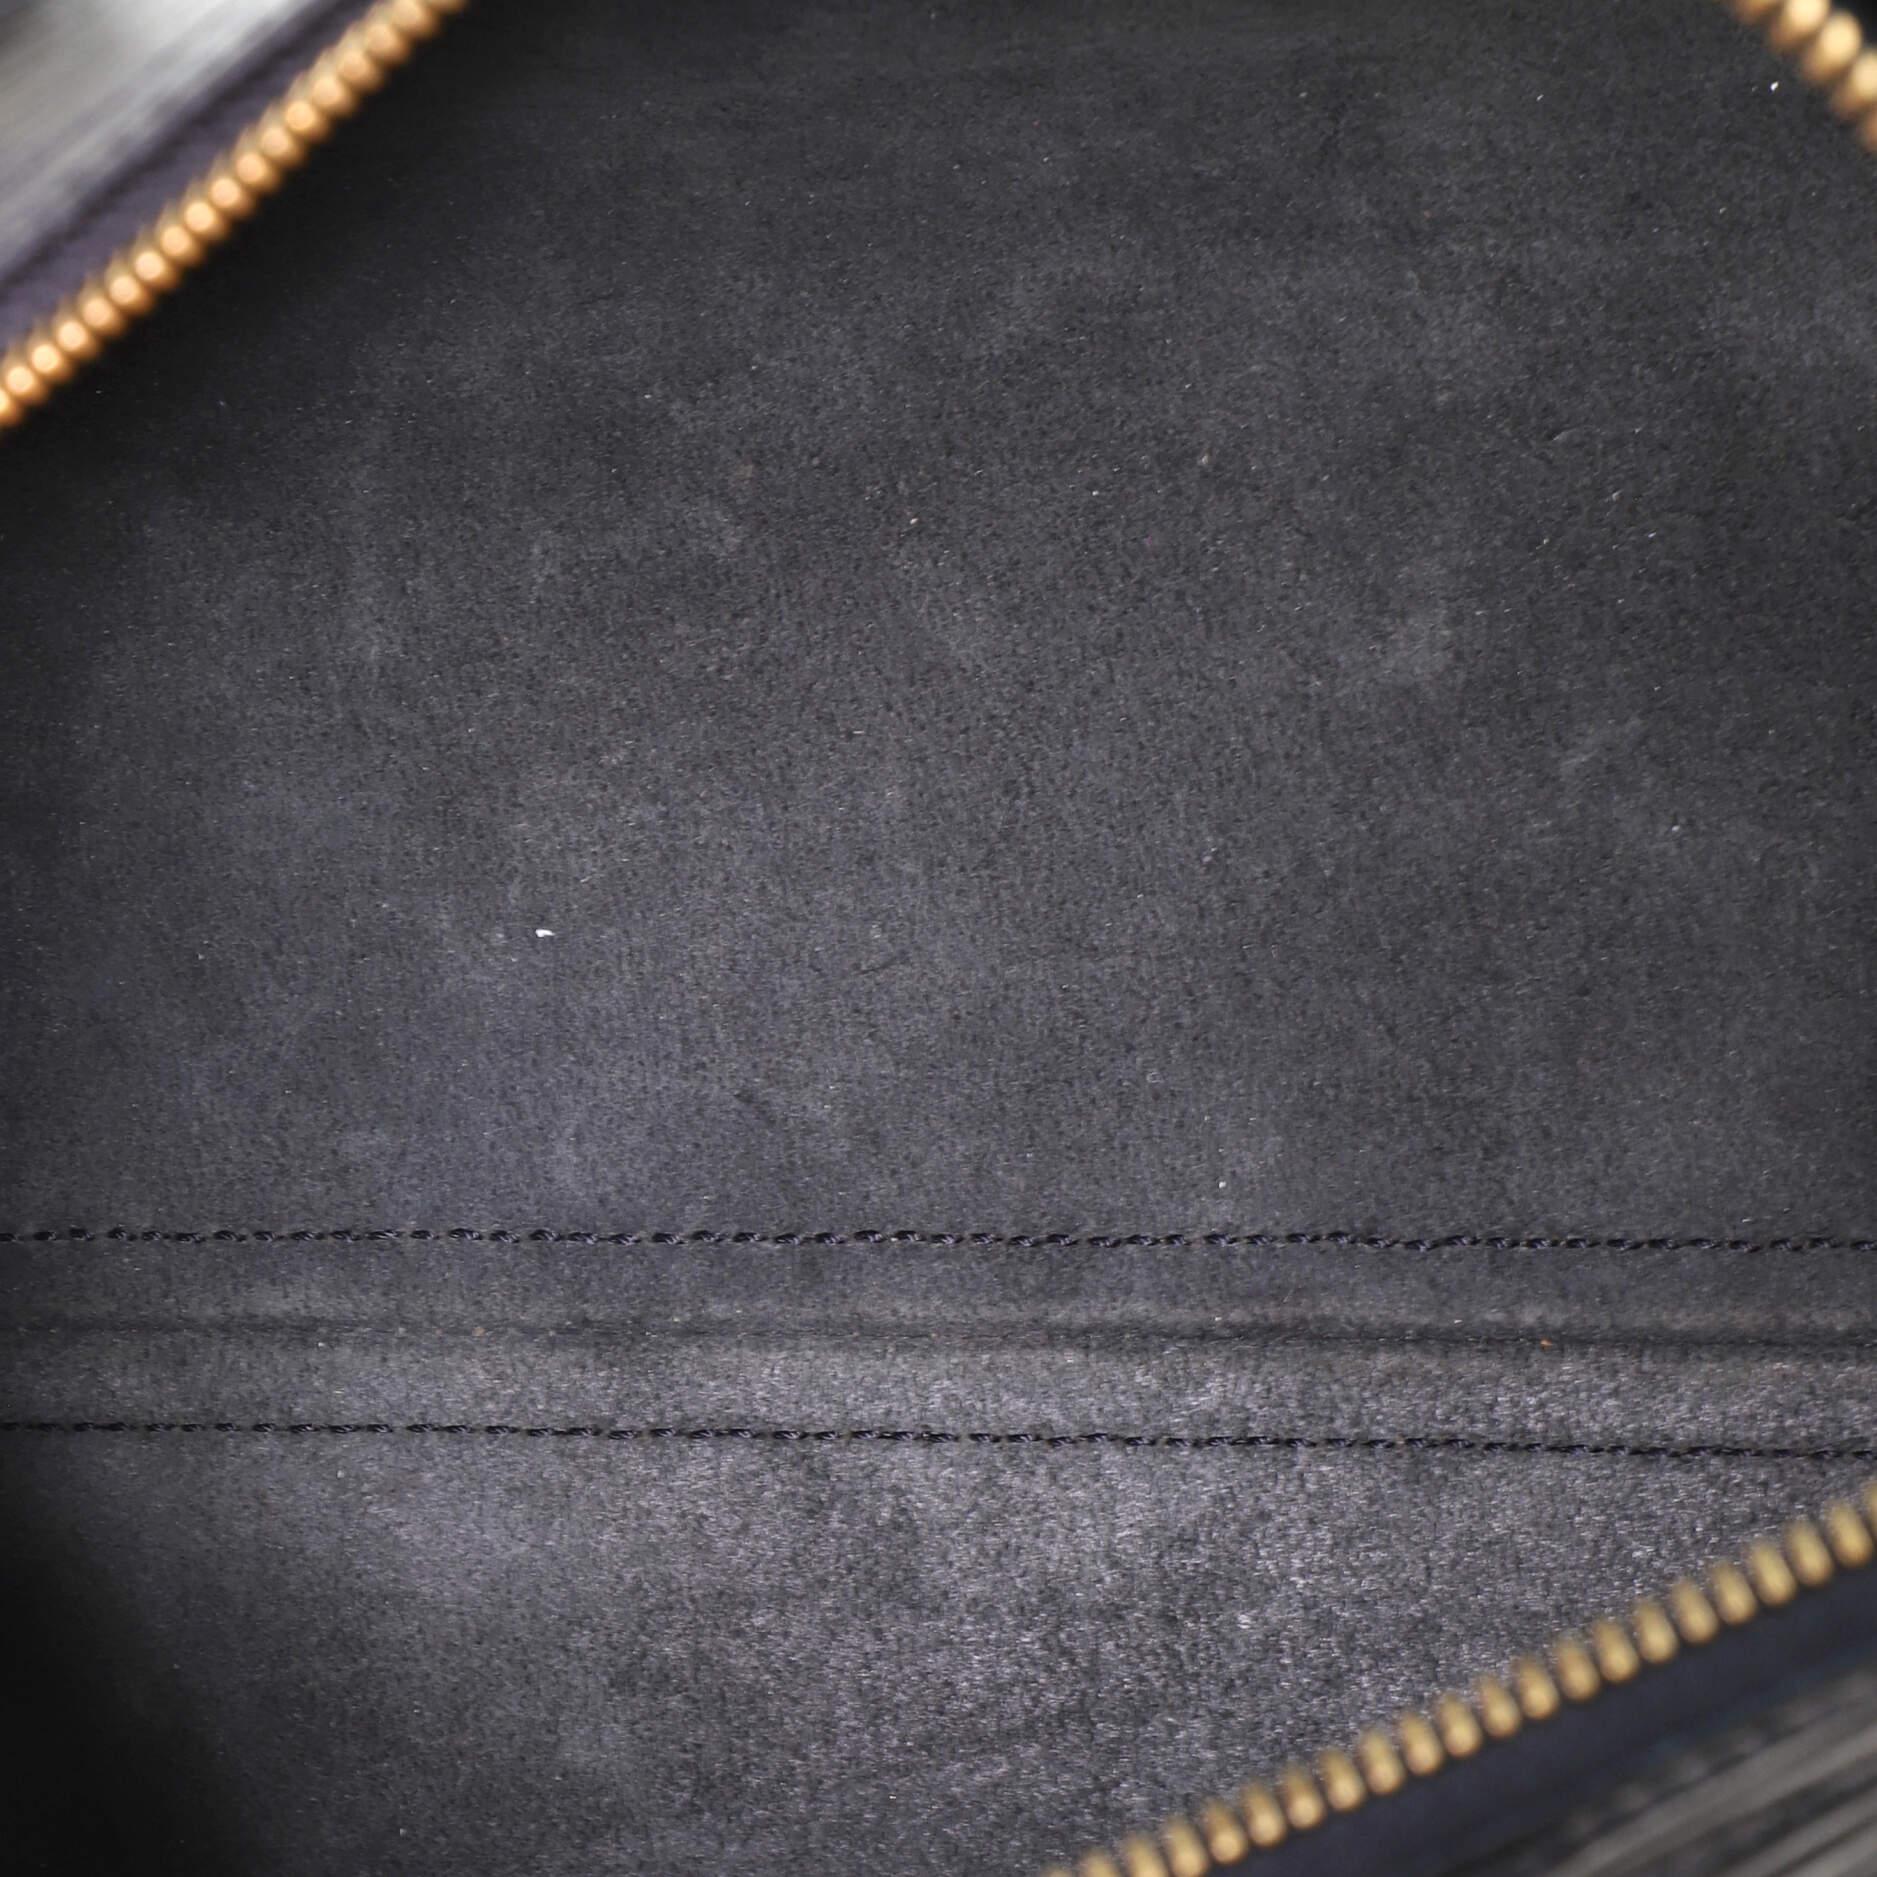 Louis Vuitton Speedy Handbag Epi Leather 30 1